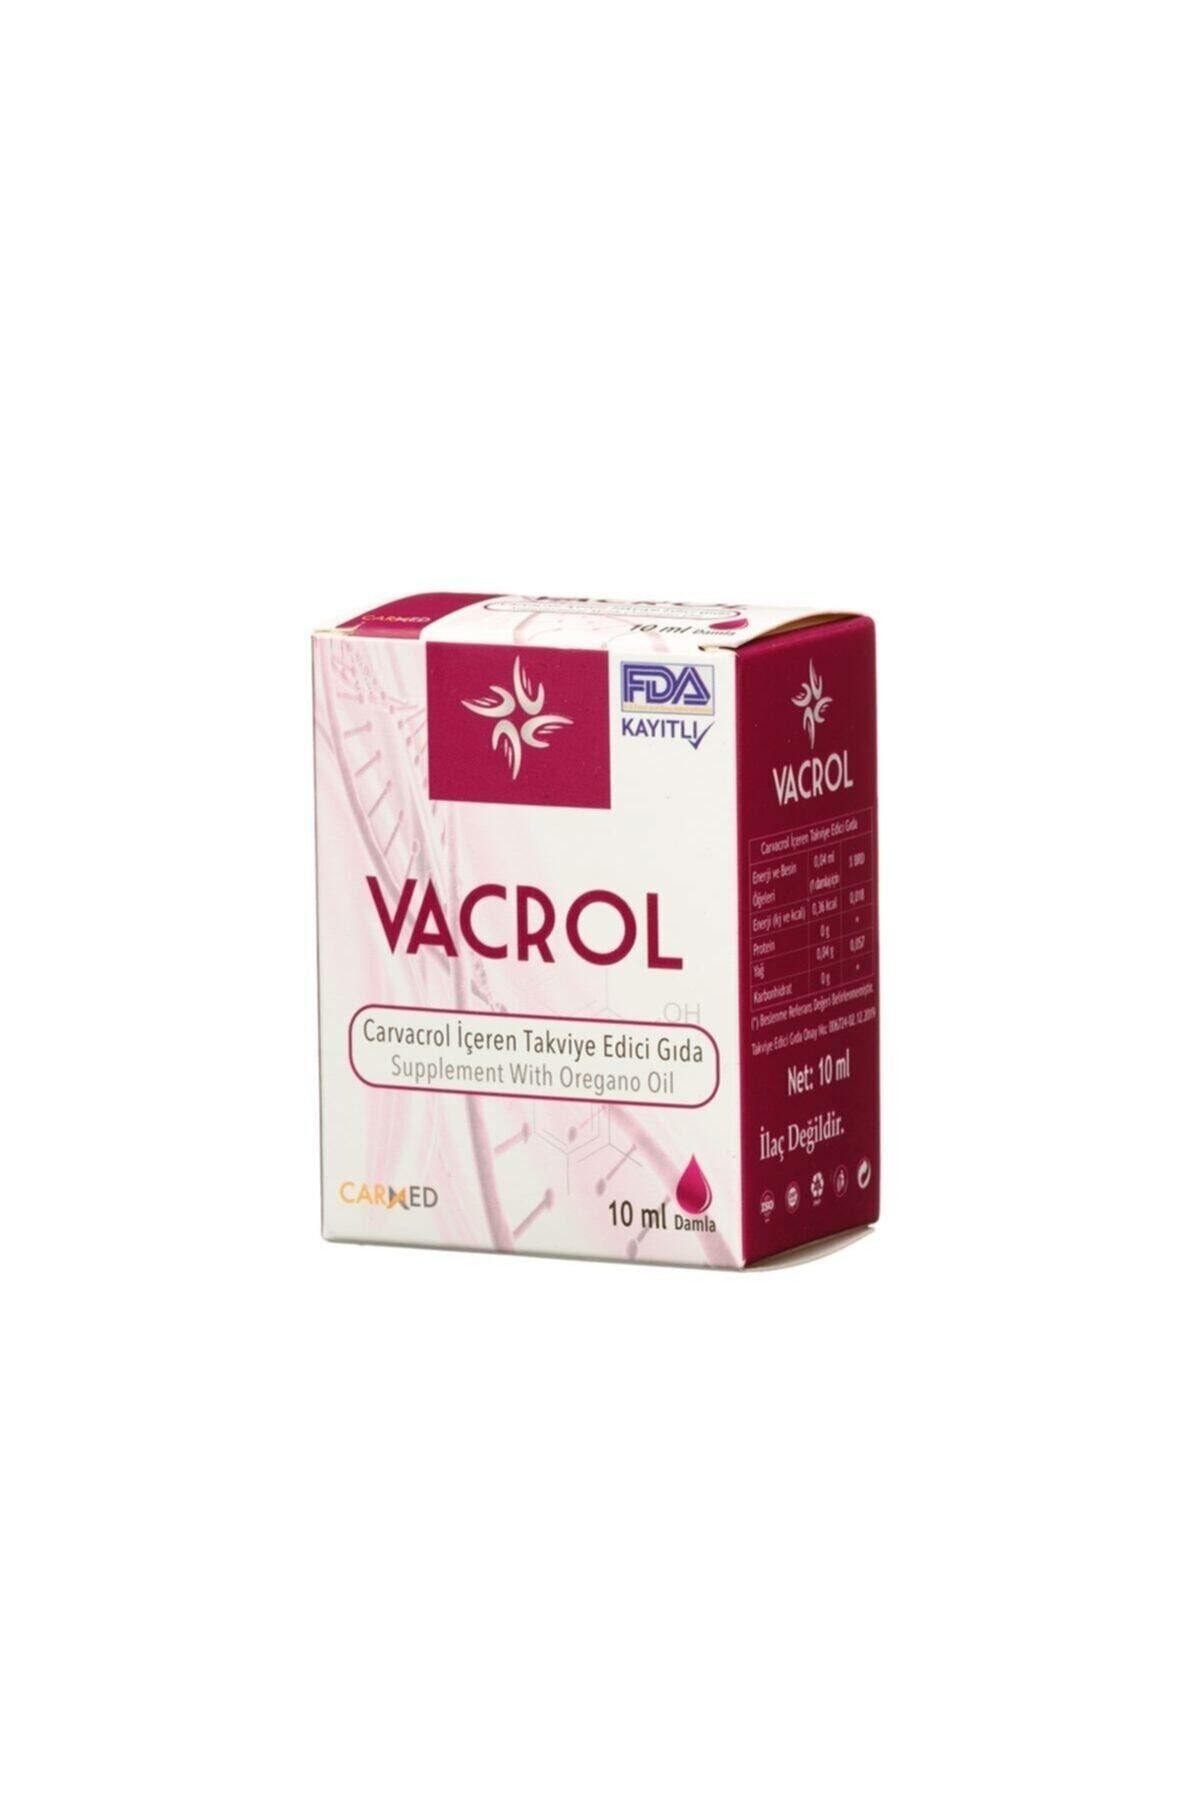 Vacrol Damla 10ml - Karvakrol Içeren Takviye Edici Gıda